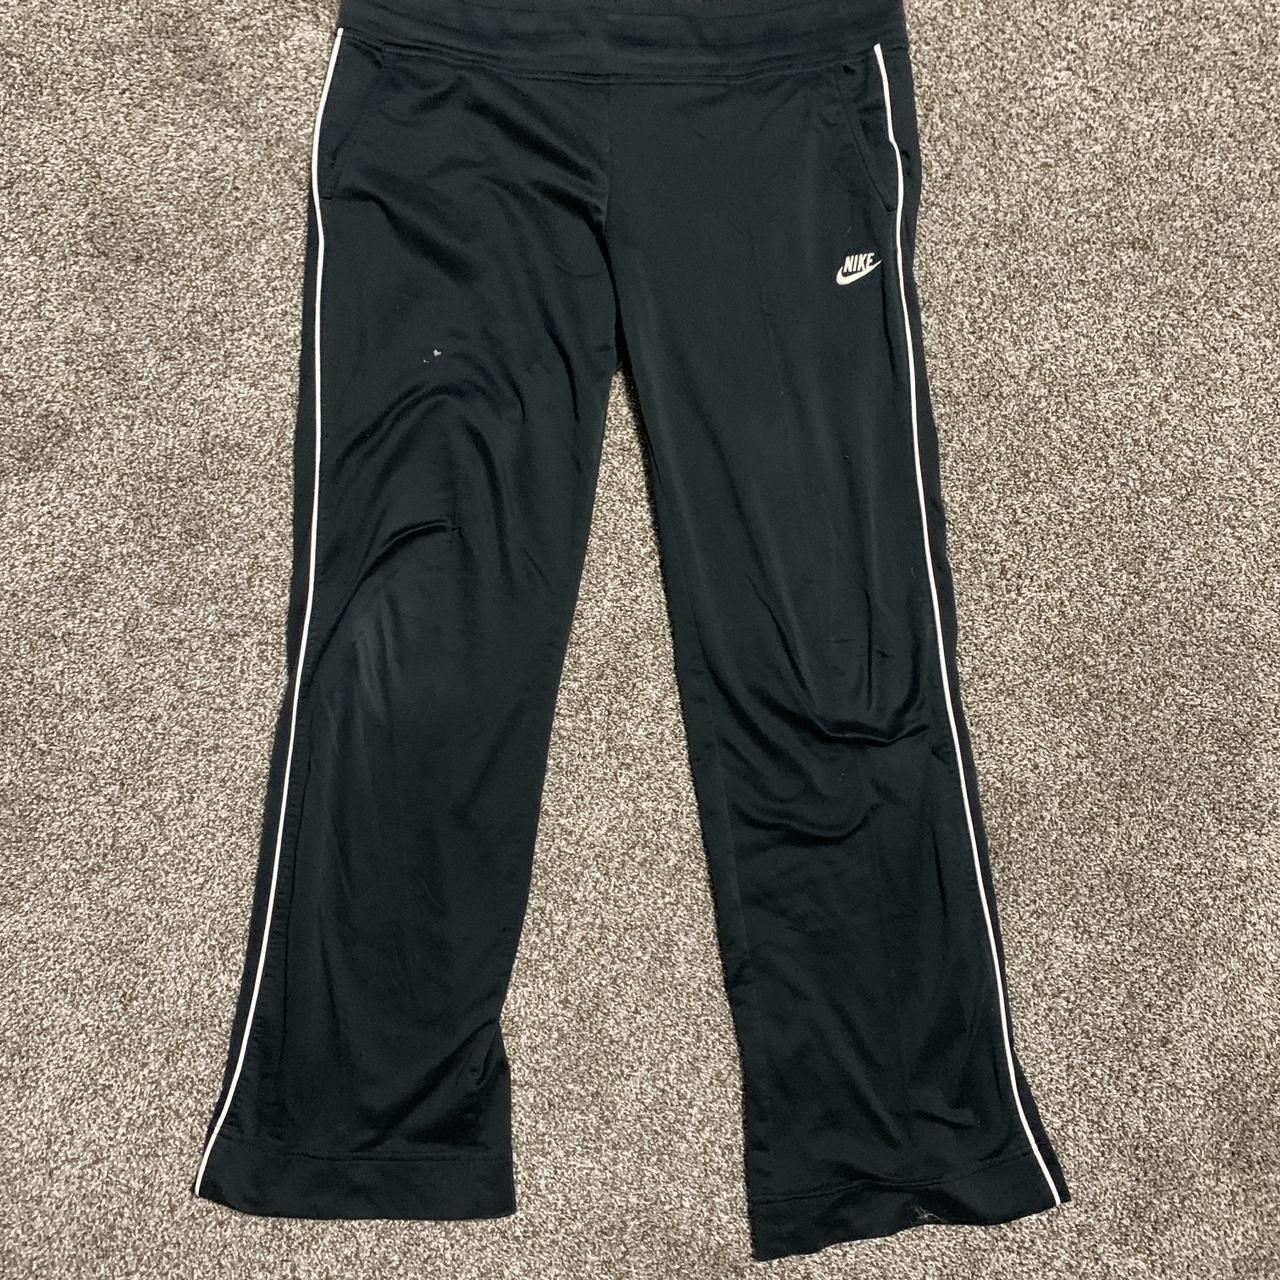 Early 2000s black Nike sweatpants/leggings with - Depop